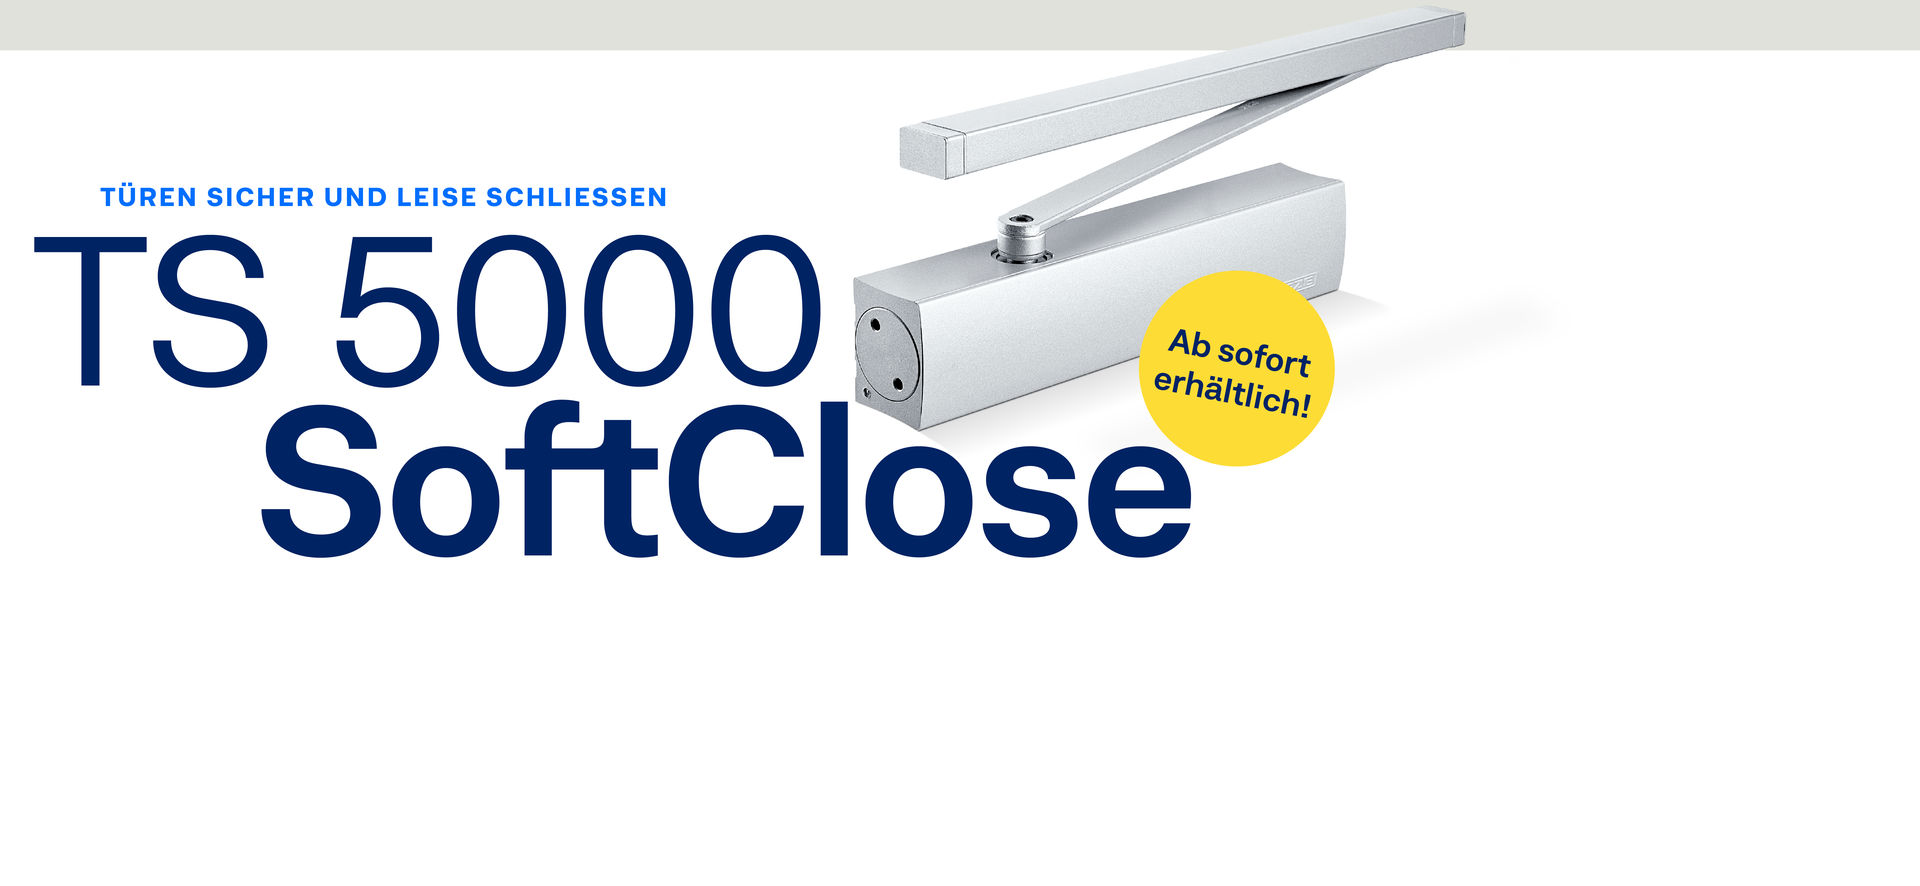 Mit unserem neuen TS 5000 SoftClose schließen Ihre Türen leise und sicher.